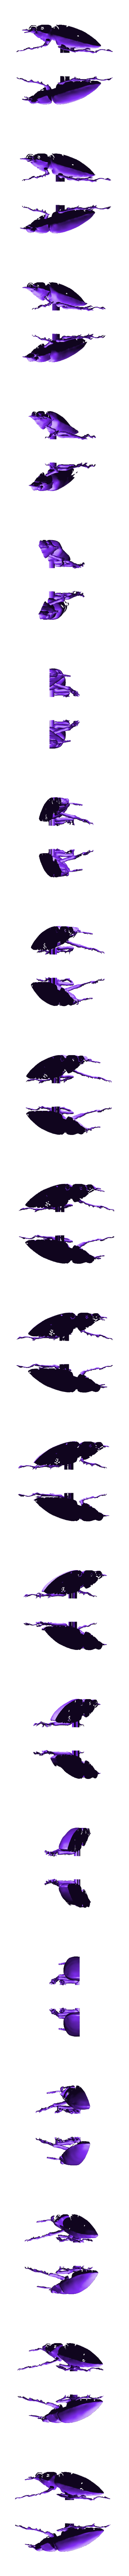 Elaphus01-female-split-56.stl Télécharger fichier STL gratuit Cyclommatus elaphus • Design pour impression 3D, Dendeba